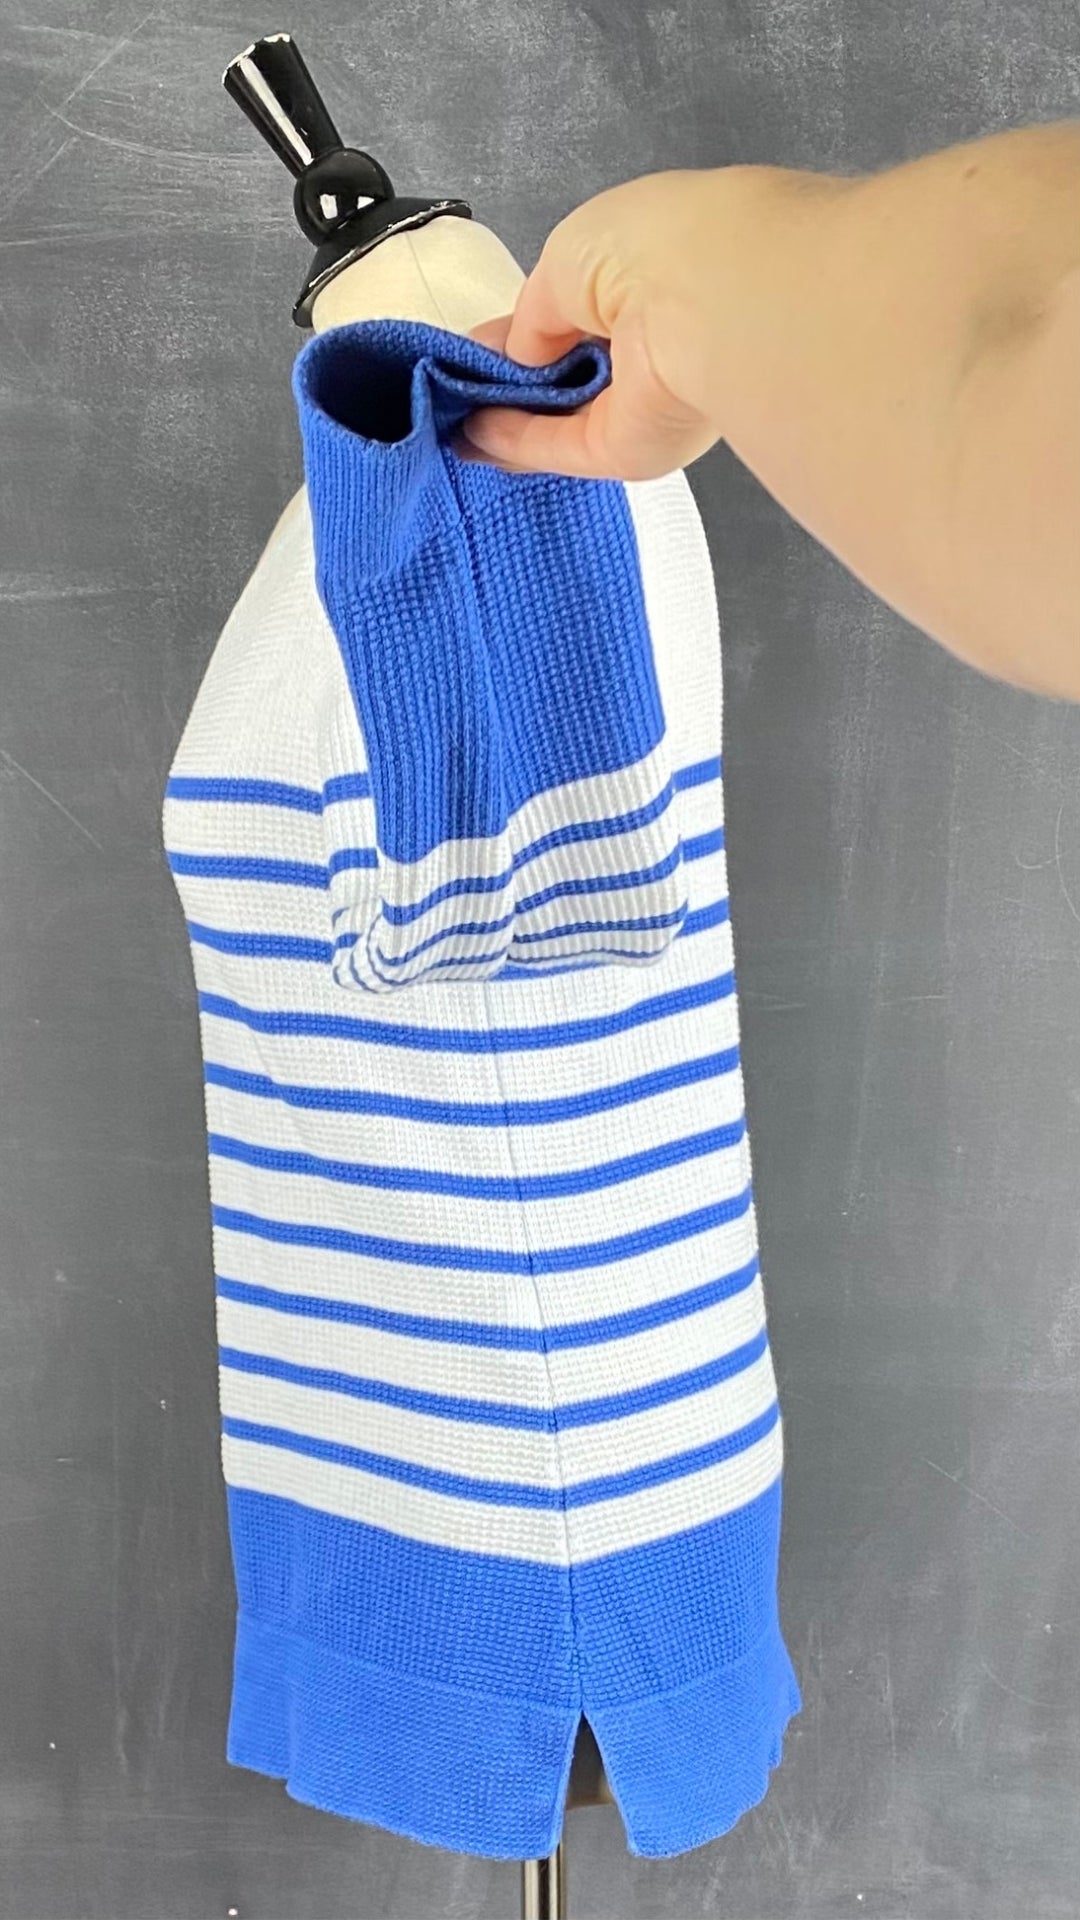 Chandail marinière en tricot de coton à rayures bleues Saint James, taille 6 (small). Vue de côté, la manche relevée.